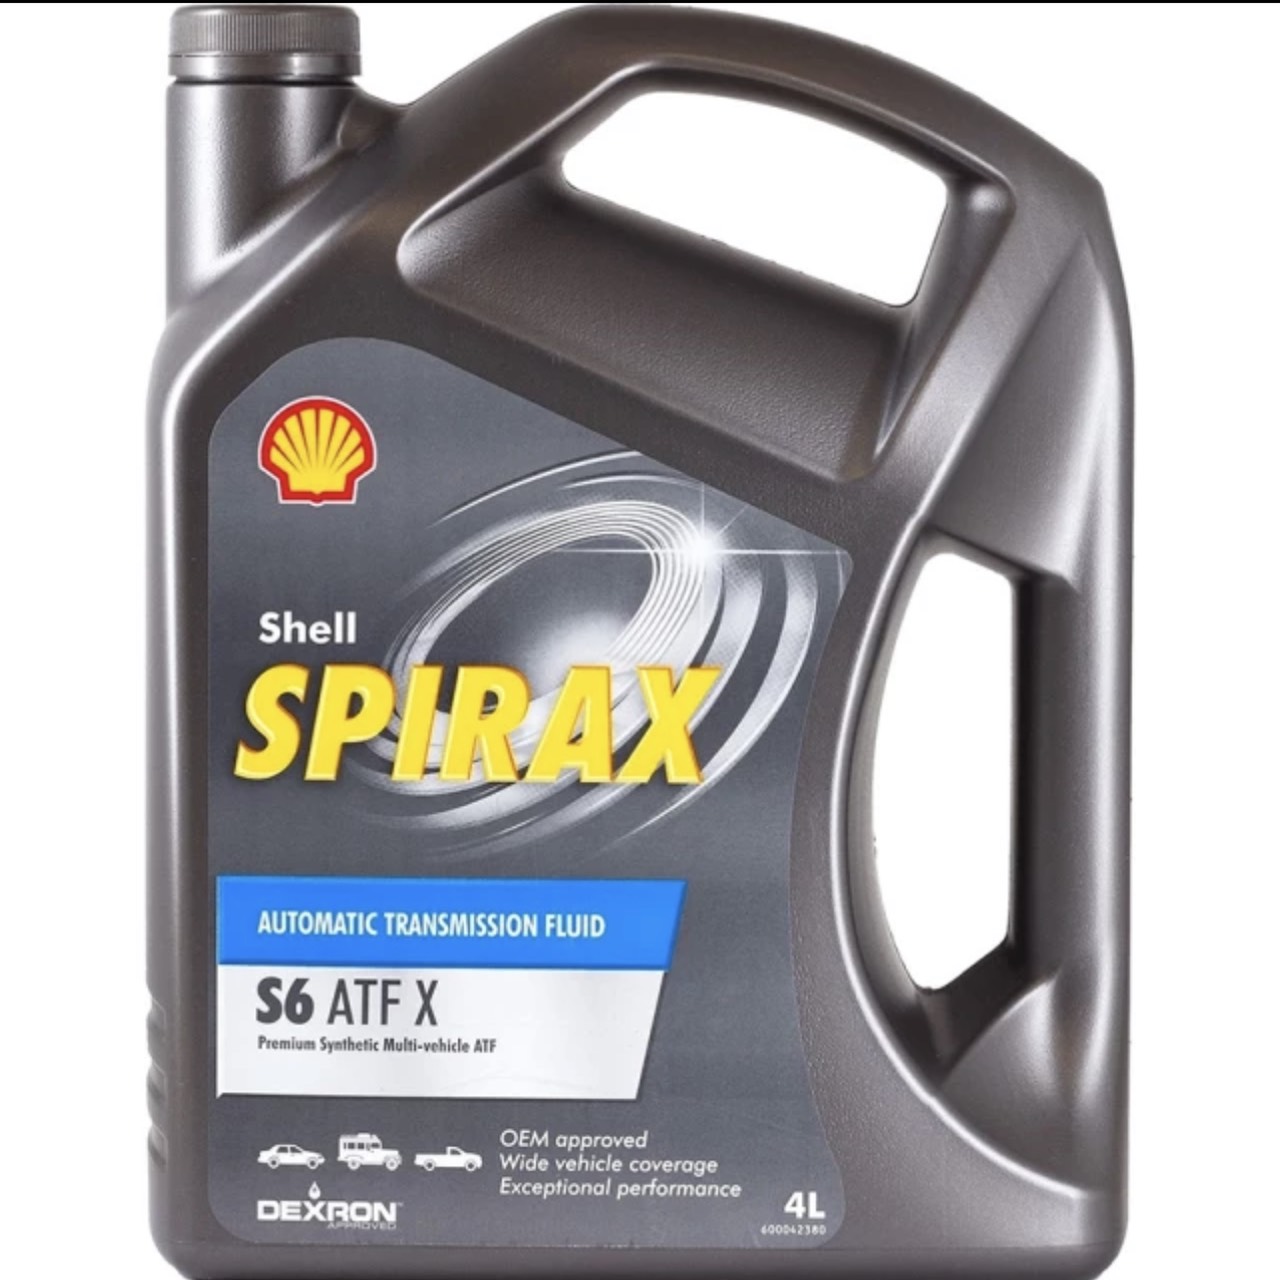 Shell เชลล์ Spirax S6 ATF X ขนาด 4 ลิตร น้ำมันสำหรับระบบส่งกำลัง เกียร์อัตโนมัติสังเคราะห์แท้